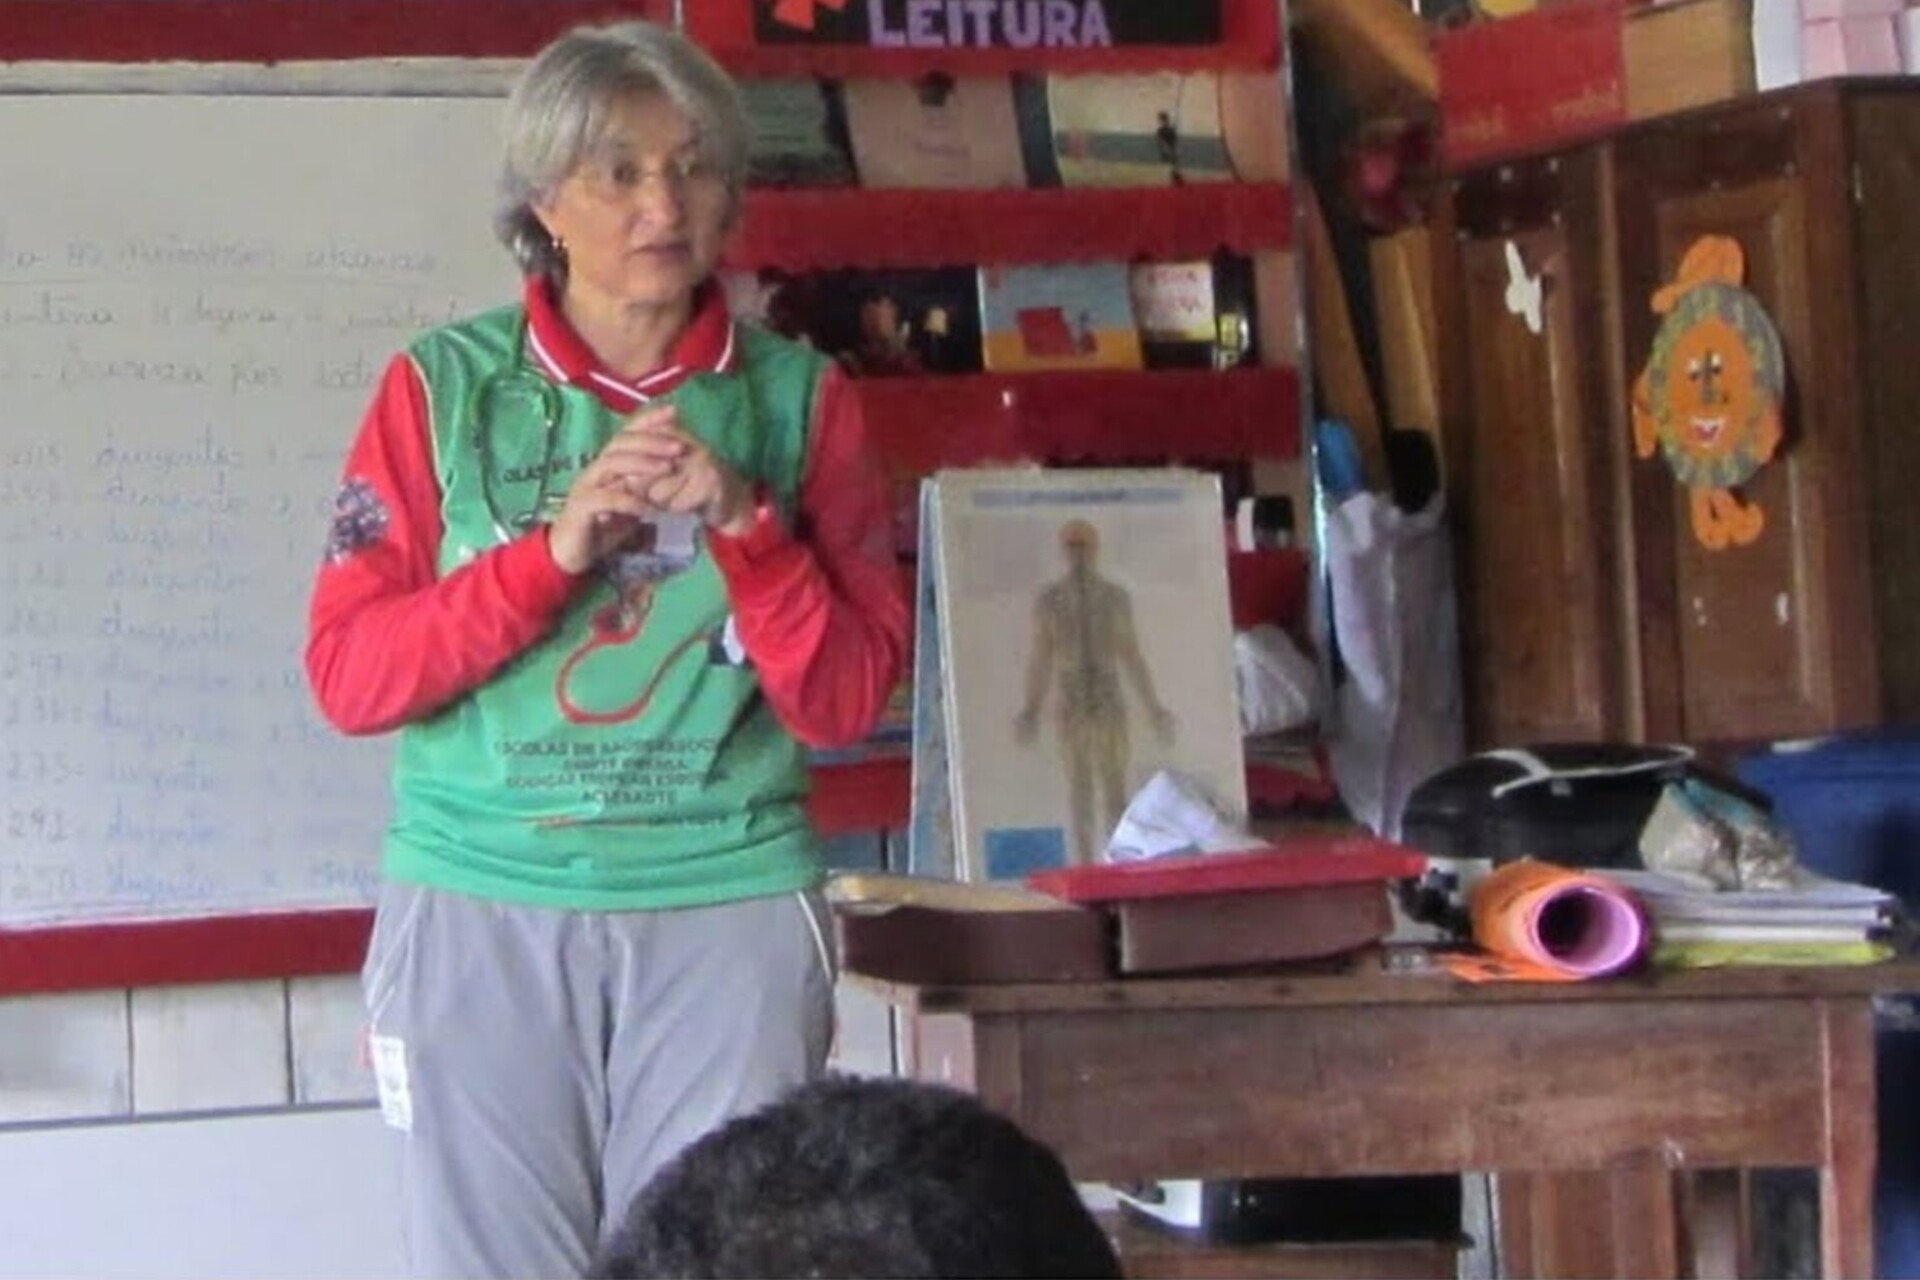 Trí tuệ nhân tạo: Antonia López González là bác sĩ người Tây Ban Nha chuyên về các bệnh nhiệt đới, người điều trị cho người bản địa Amazon dọc theo dòng sông Purus dài